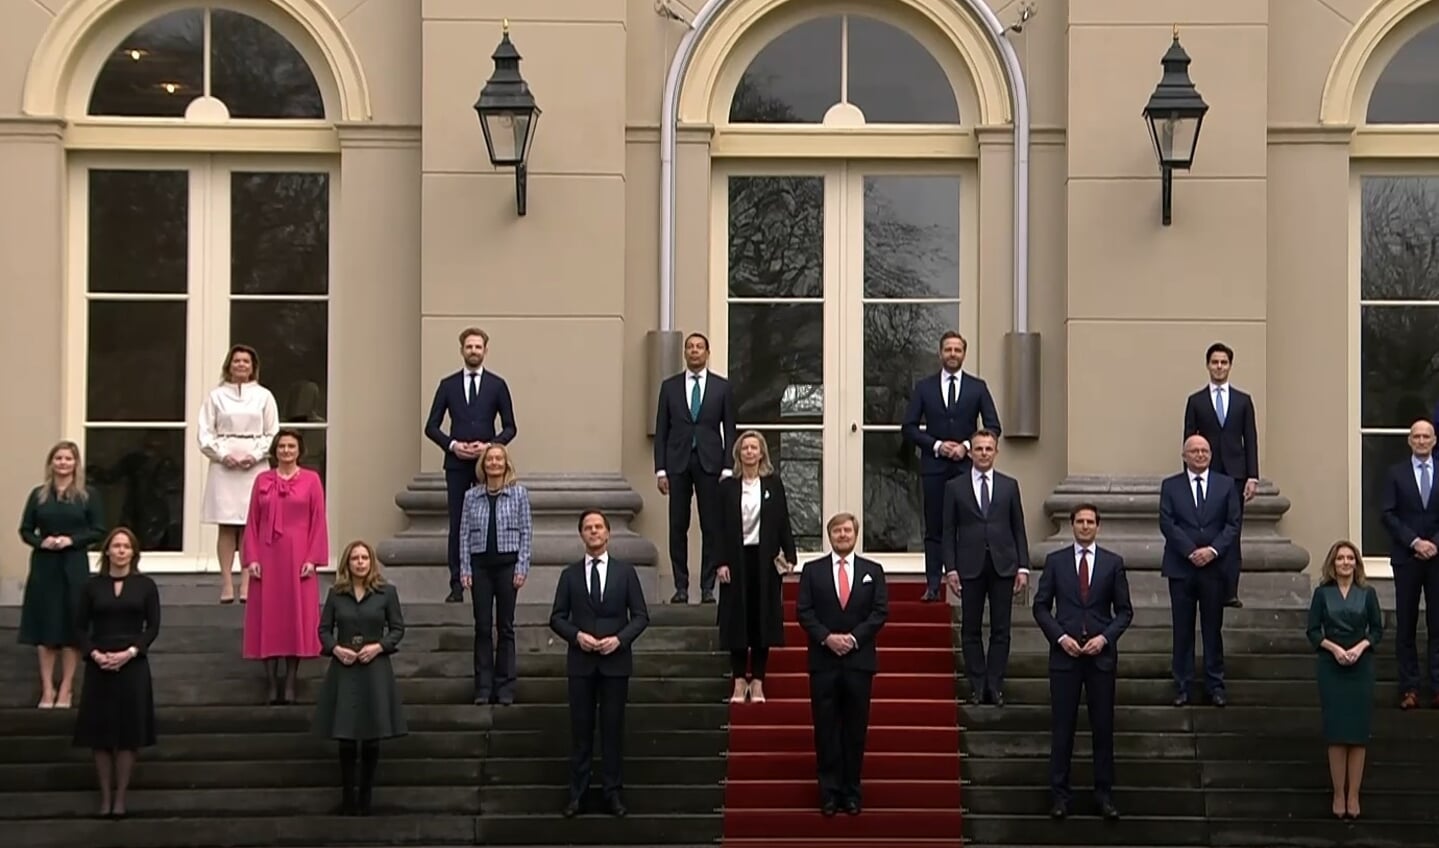 De bordesfoto van het nieuwe kabinet met Franc Weerwind (Foto: NOS Live)